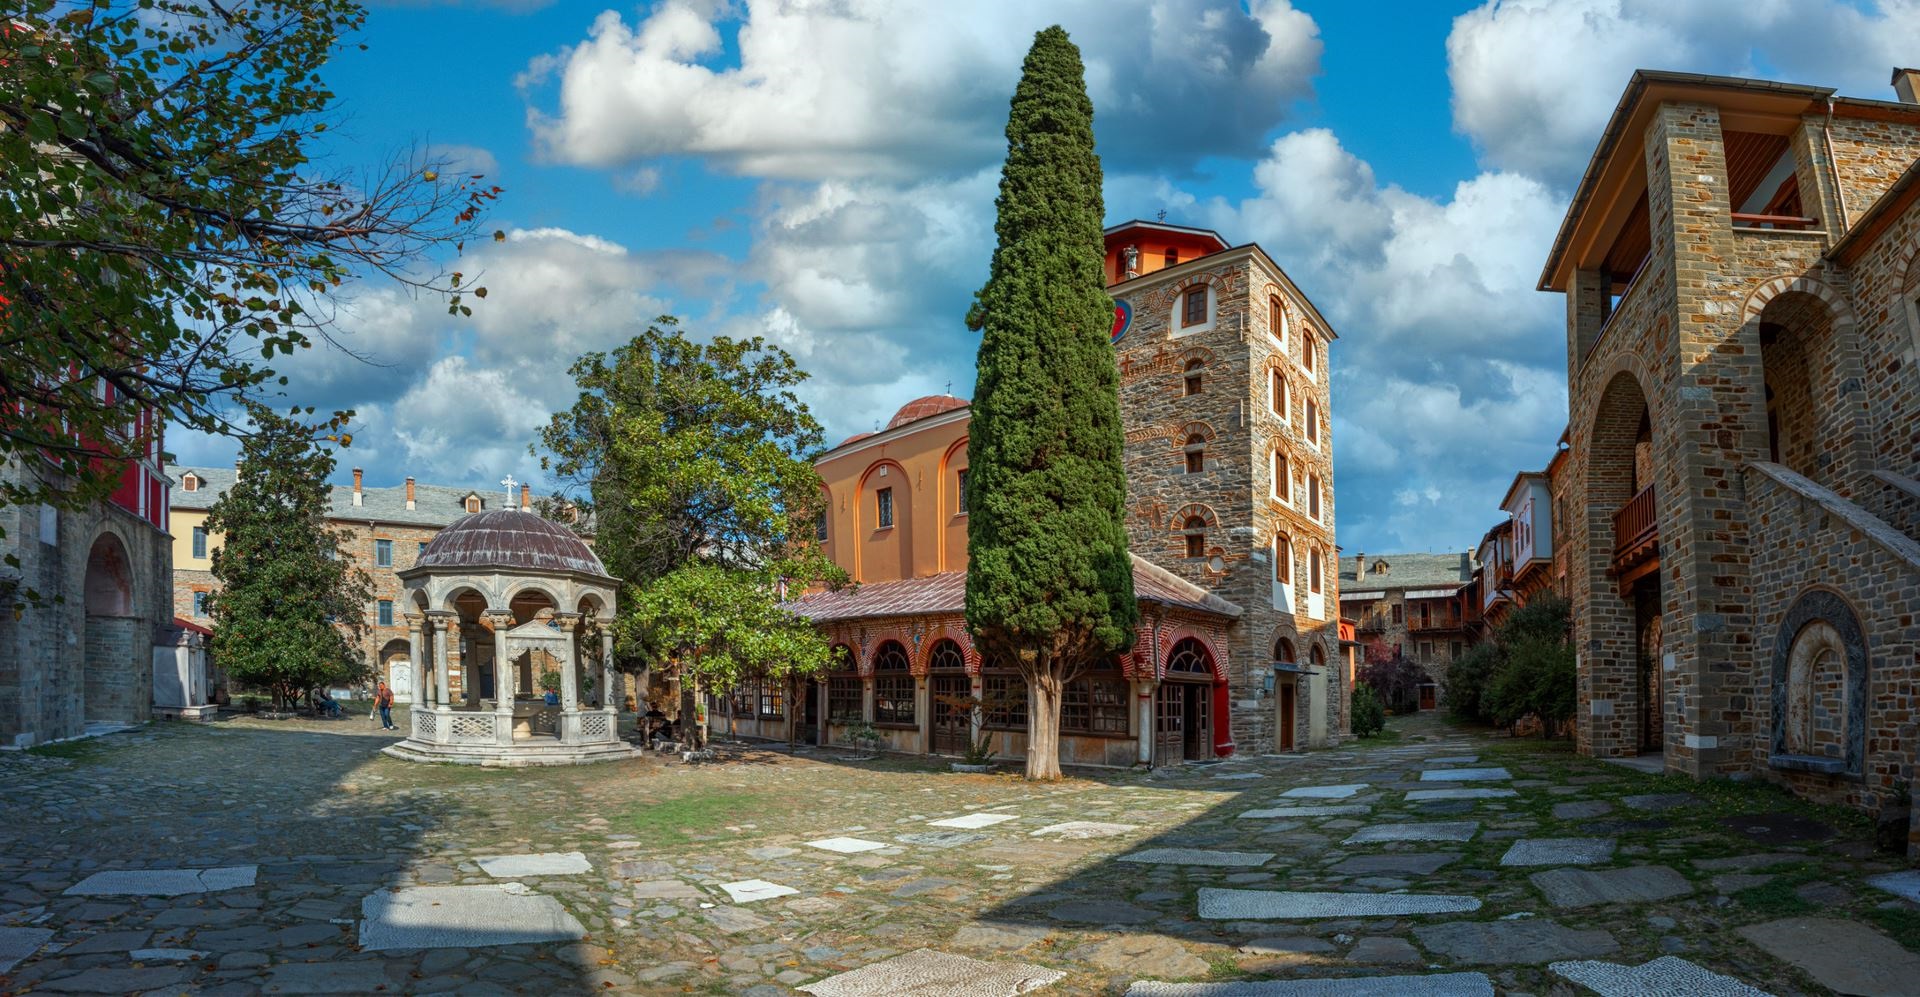 Iviron Monastery